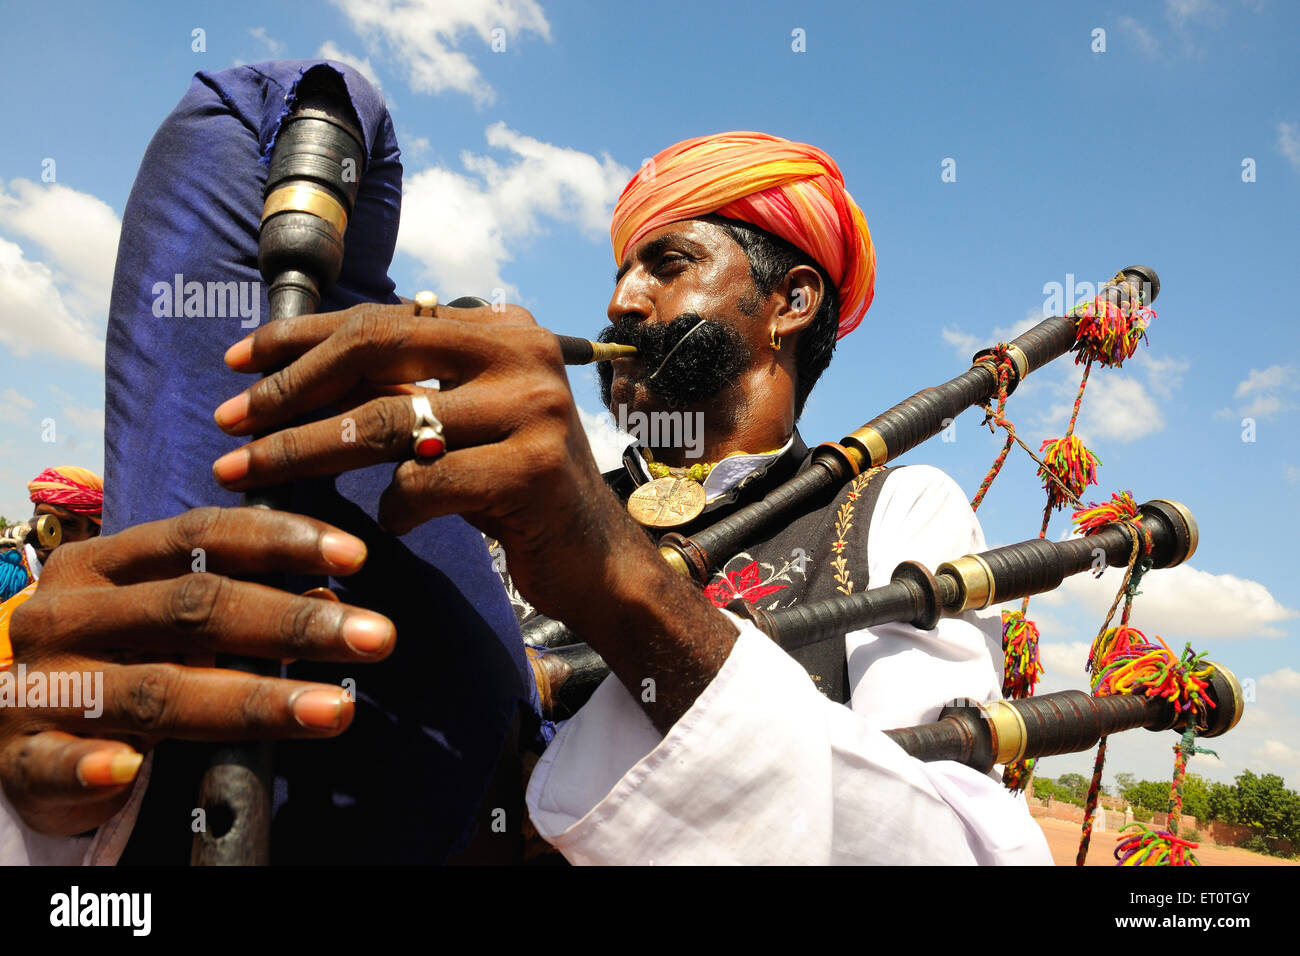 Indian man playing bagpipe, Rajasthan, India Stock Photo